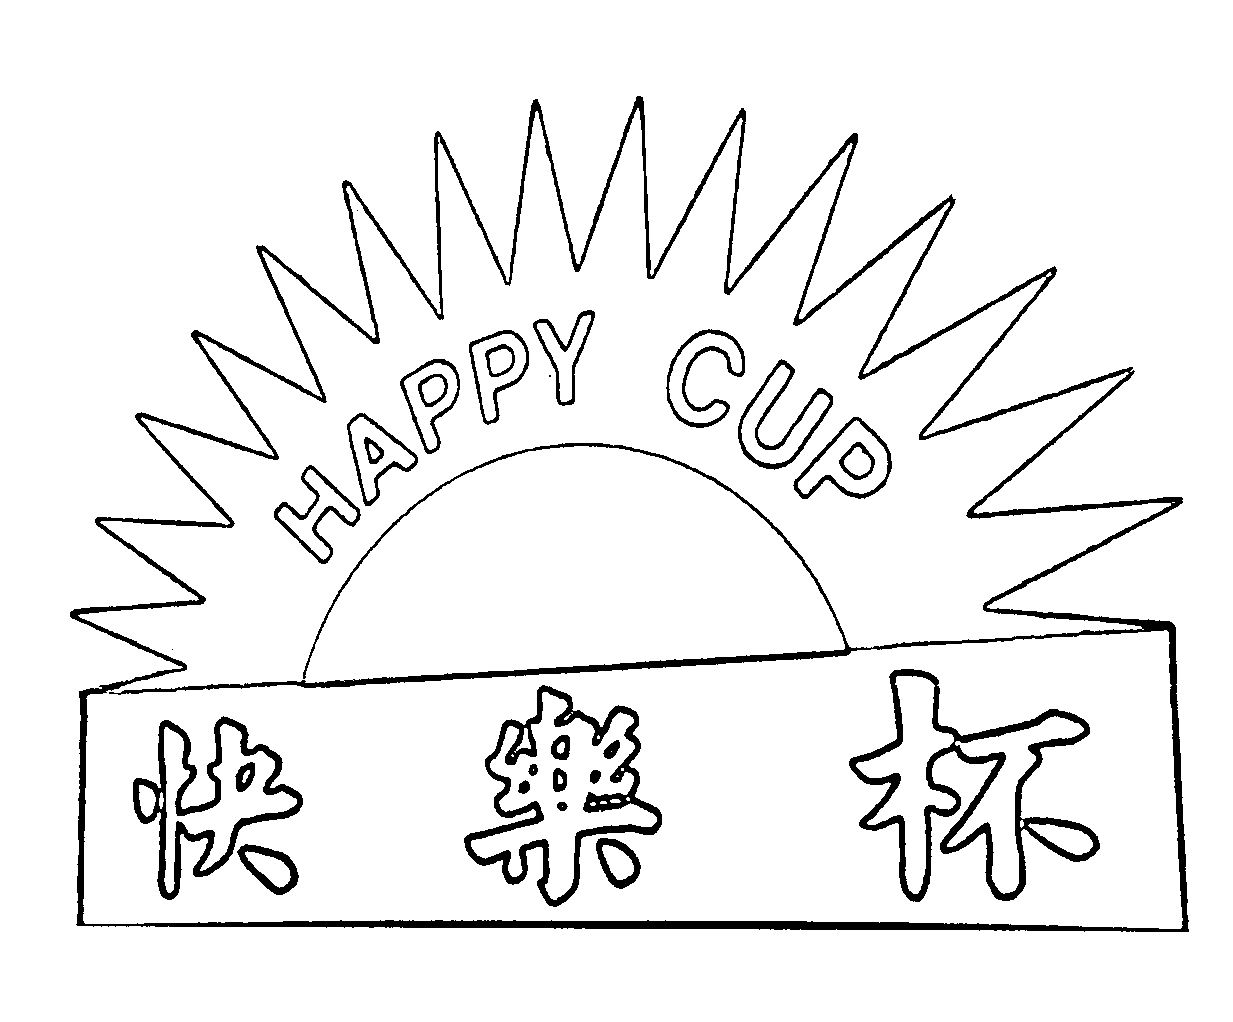  HAPPY CUP